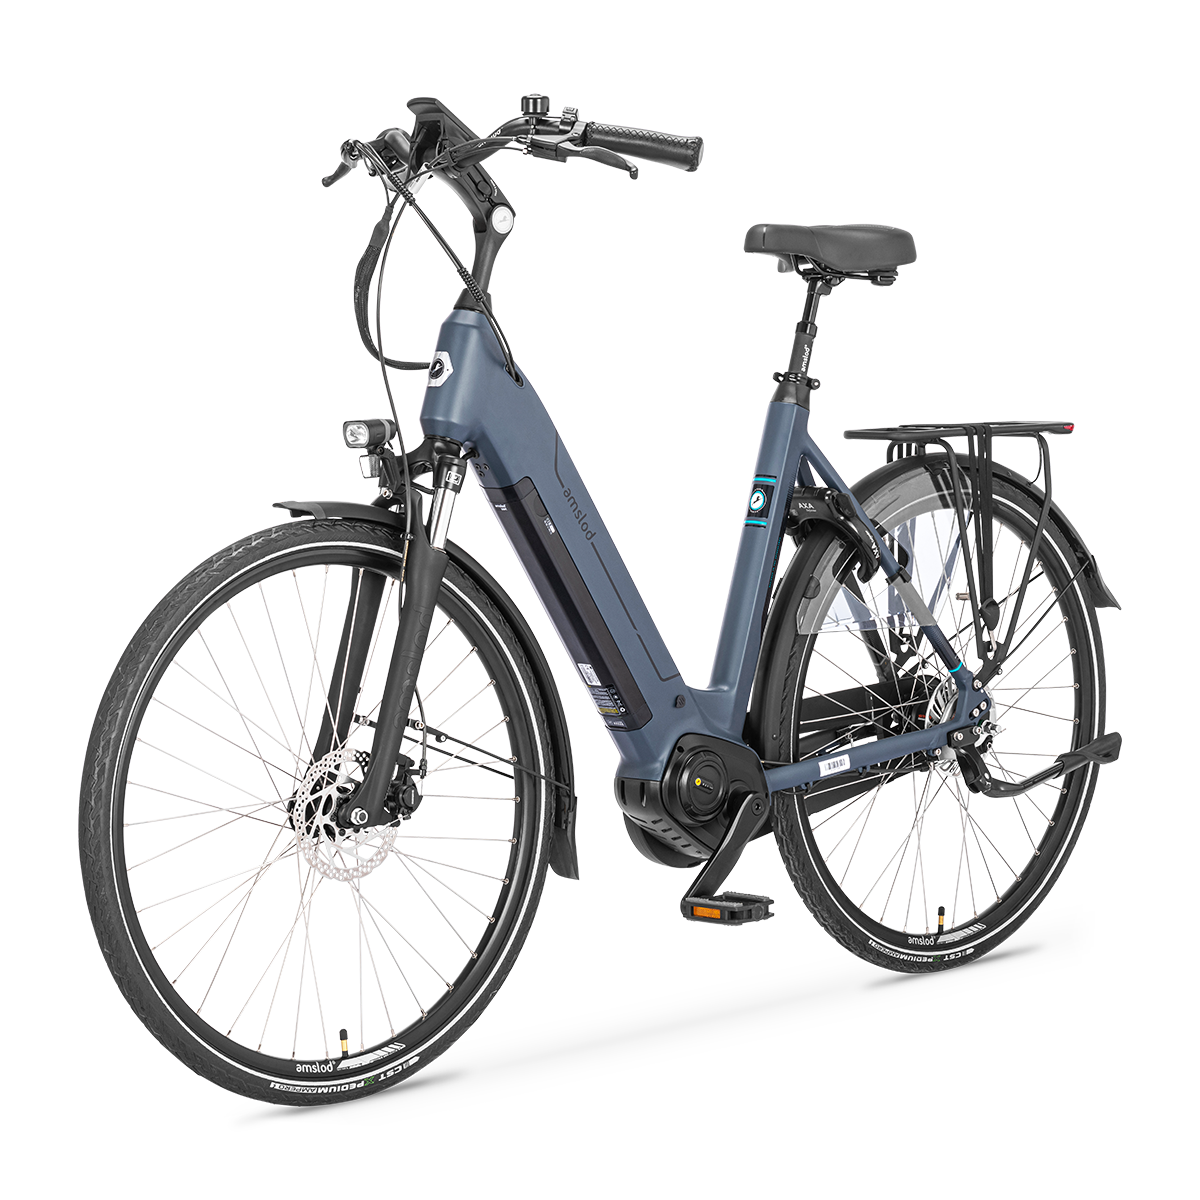 Afbeelding Amslod elektrische fiets active max hedon amslod fietsen 6